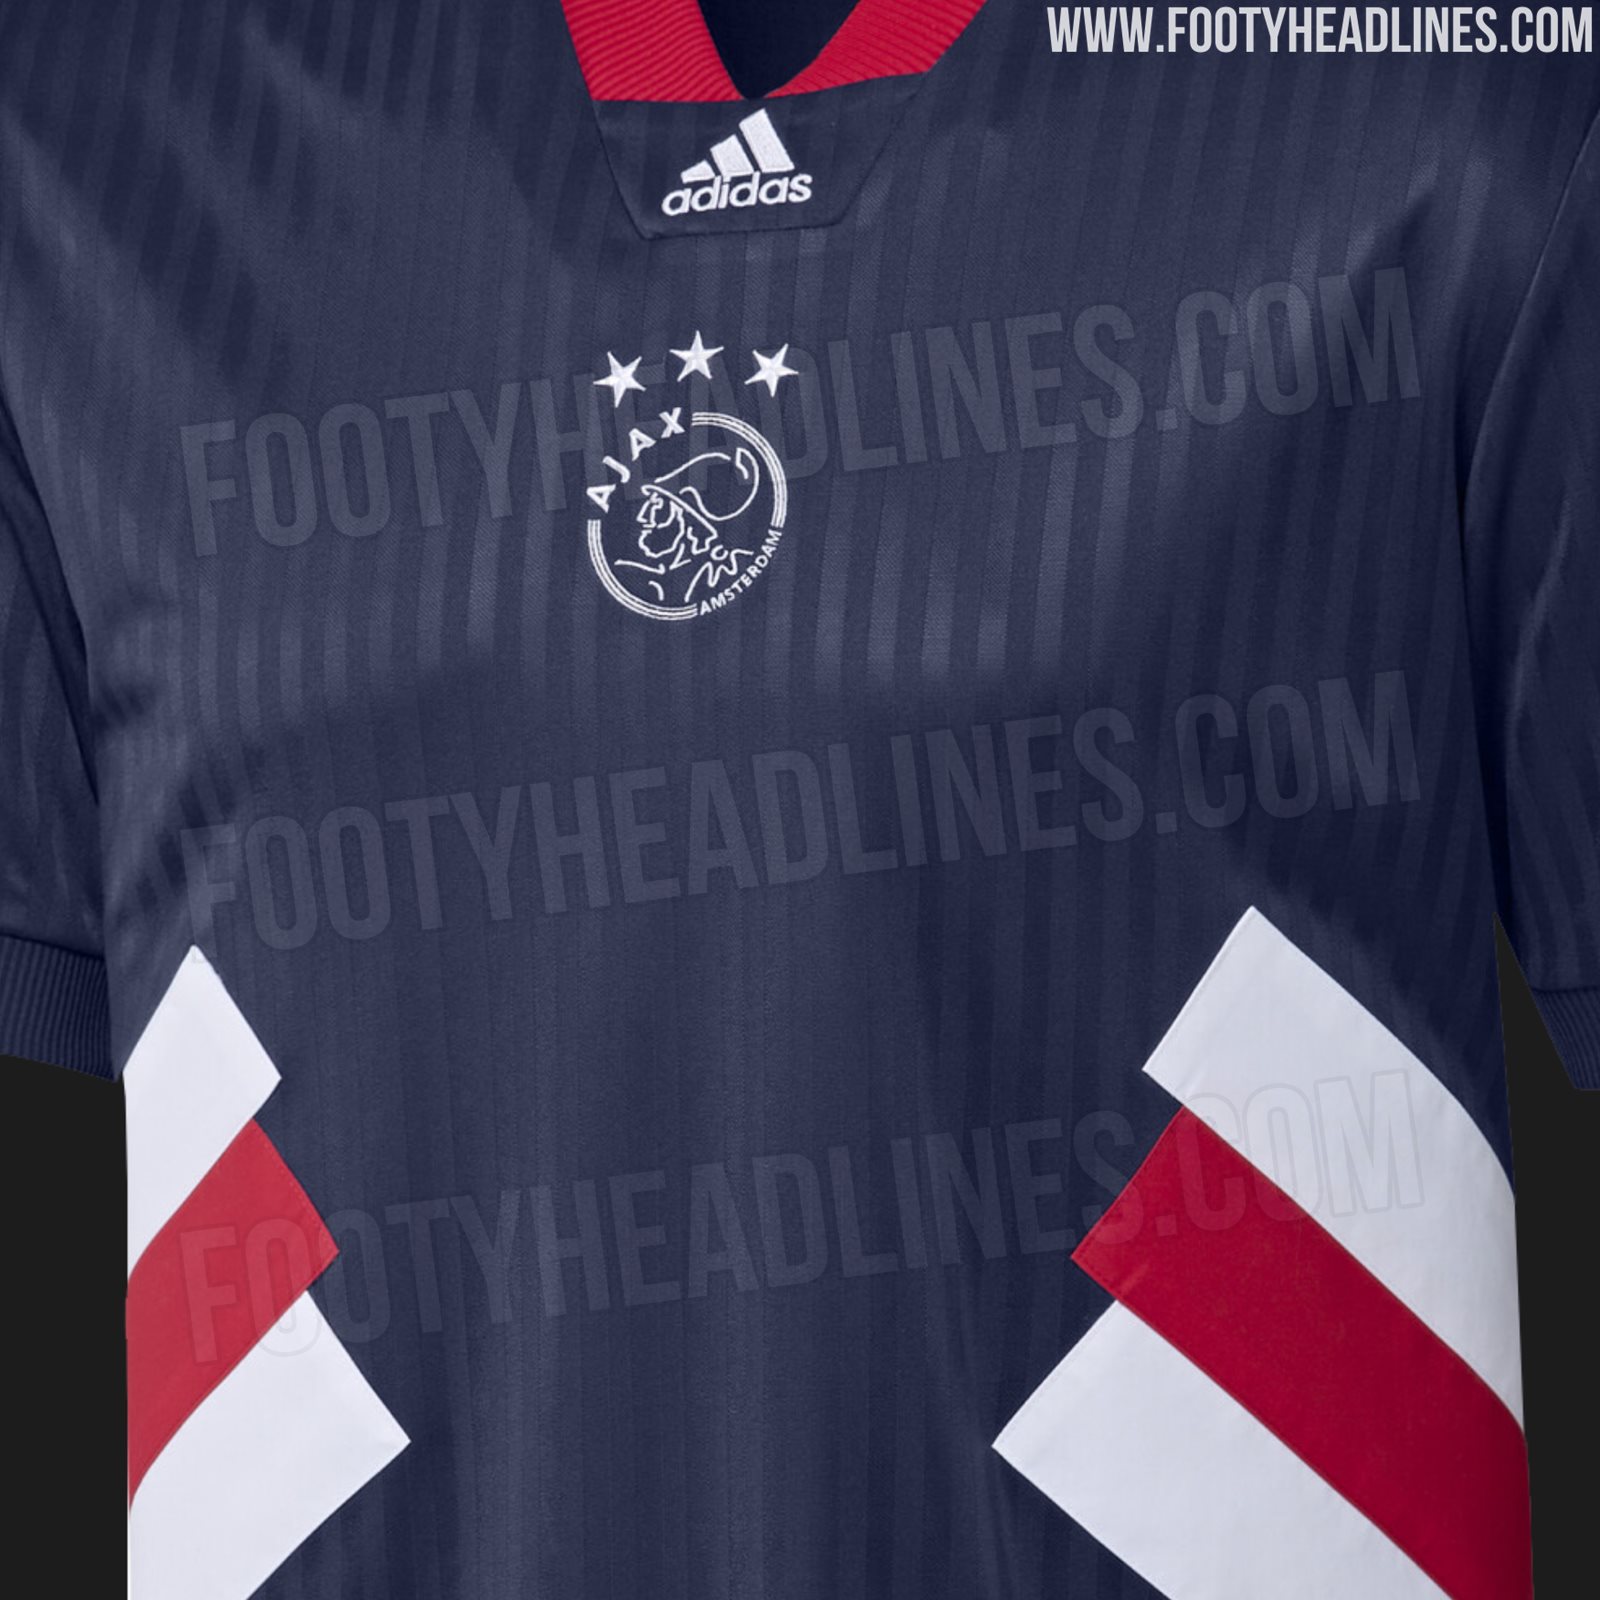 Gewend aan afstuderen moeder Exclusive: Adidas Ajax 2023 Icon Remake Kit Leaked - Footy Headlines